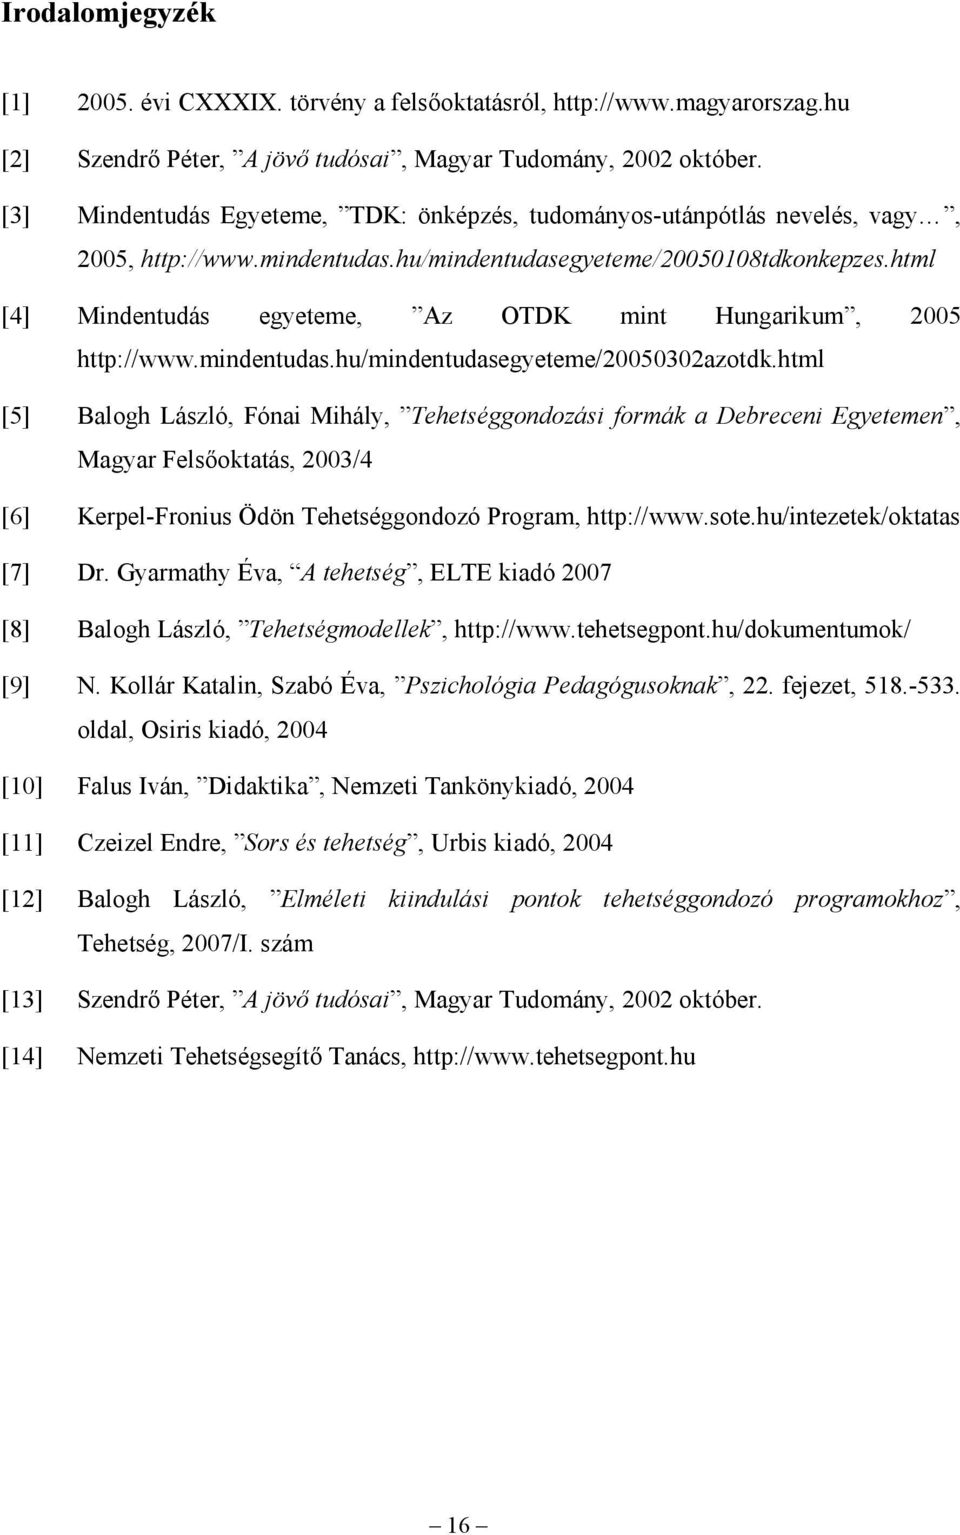 html [4] Mindentudás egyeteme, Az OTDK mint Hungarikum, 2005 http://www.mindentudas.hu/mindentudasegyeteme/20050302azotdk.